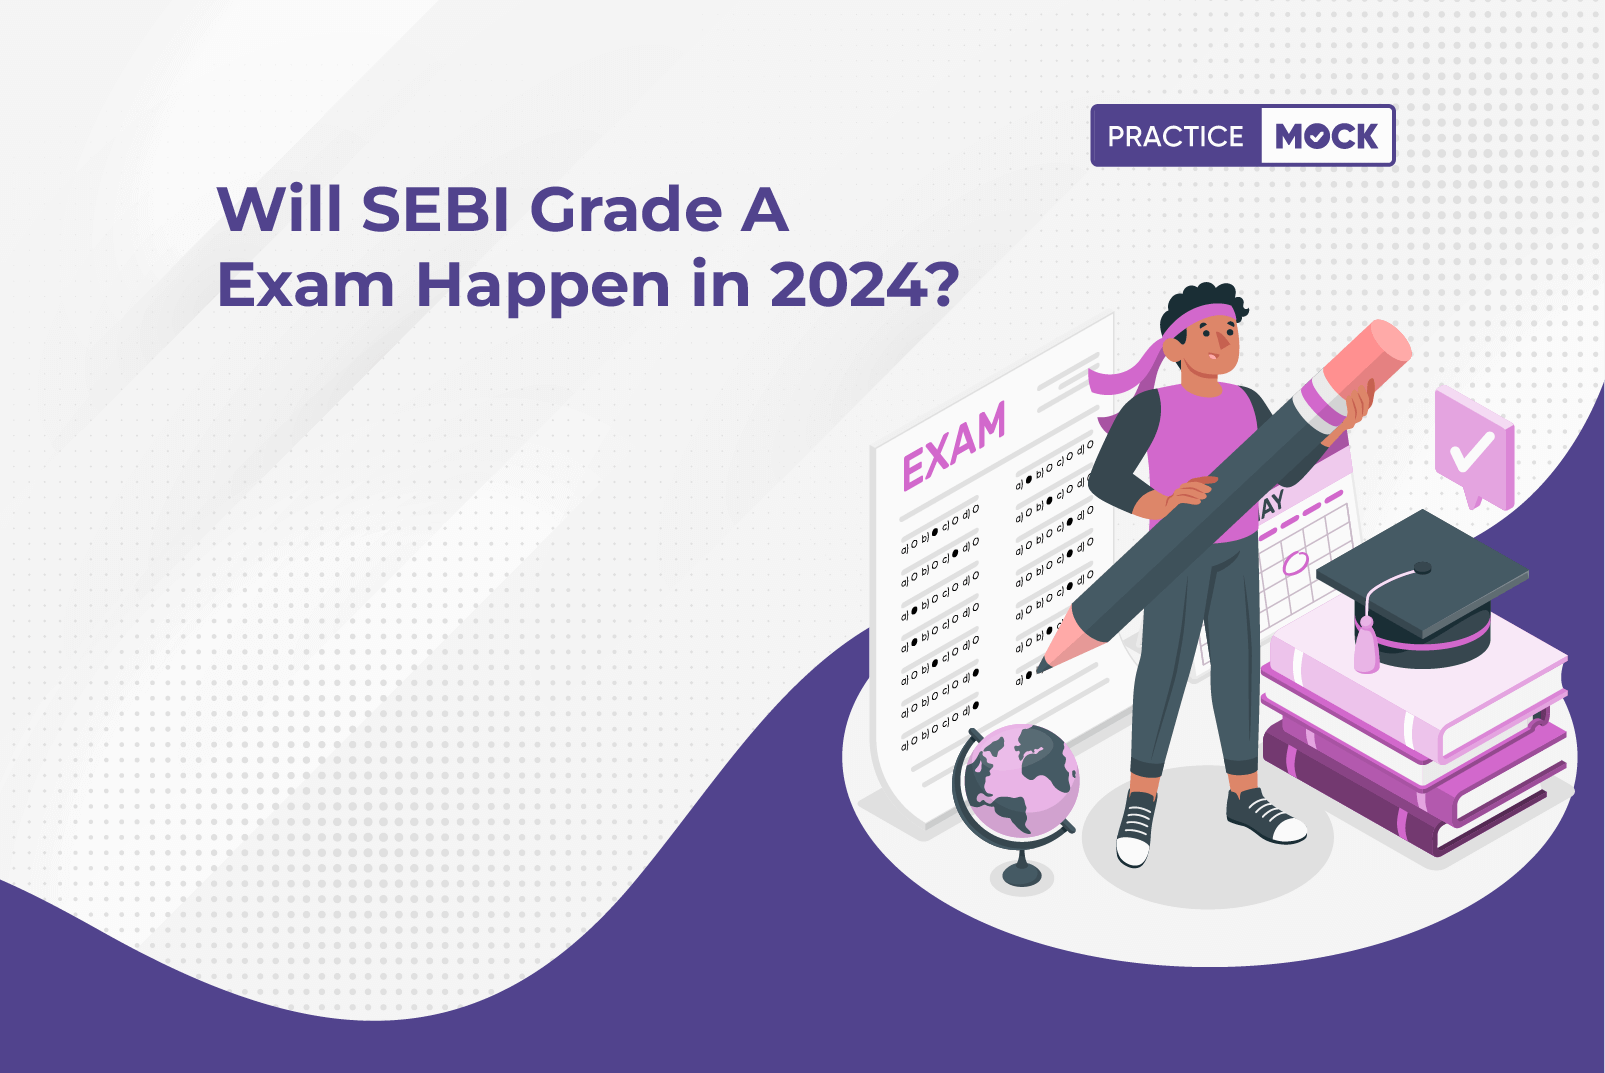 Will SEBI Grade A Exam Happen in 2024